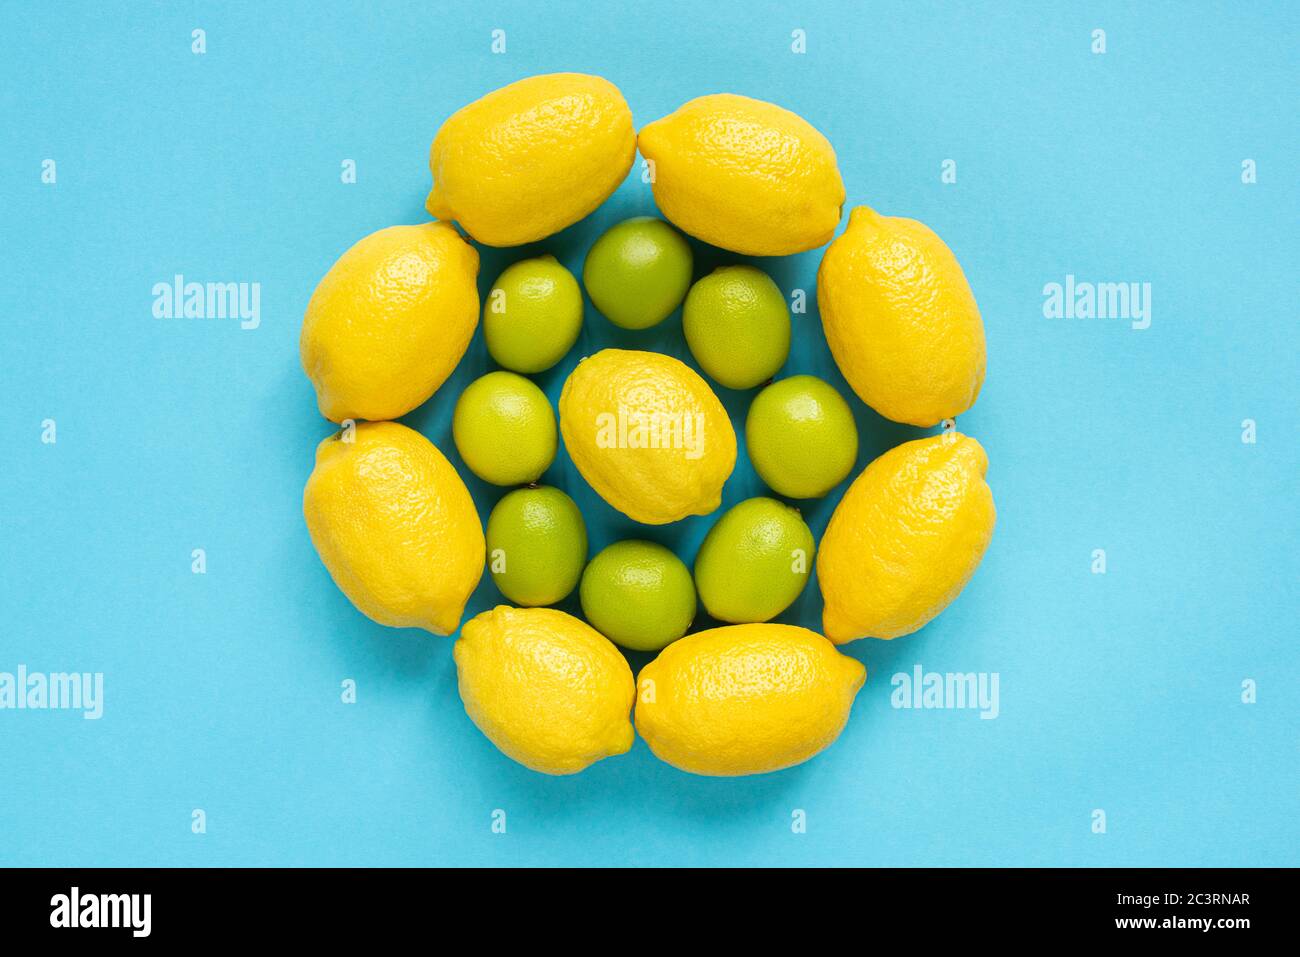 vista superior de limones amarillos maduros y limas dispuestas en círculos sobre fondo azul Foto de stock